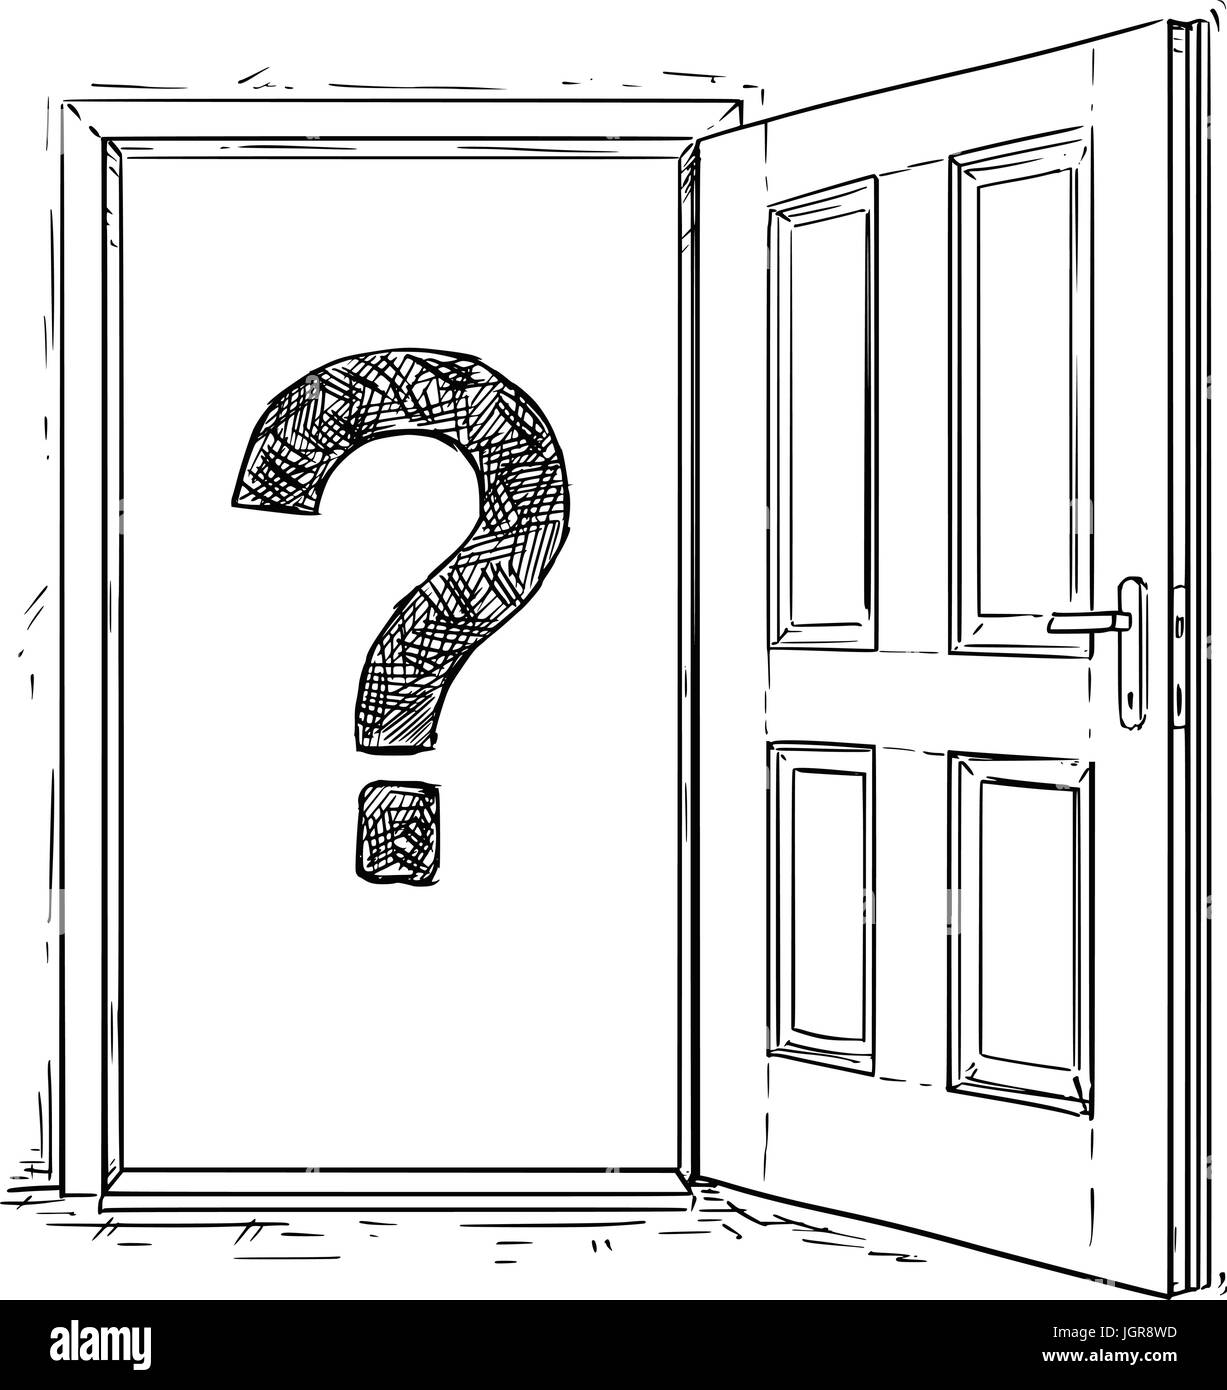 Vector cartoon of open elegant wooden door with question mark inside. Stock Vector